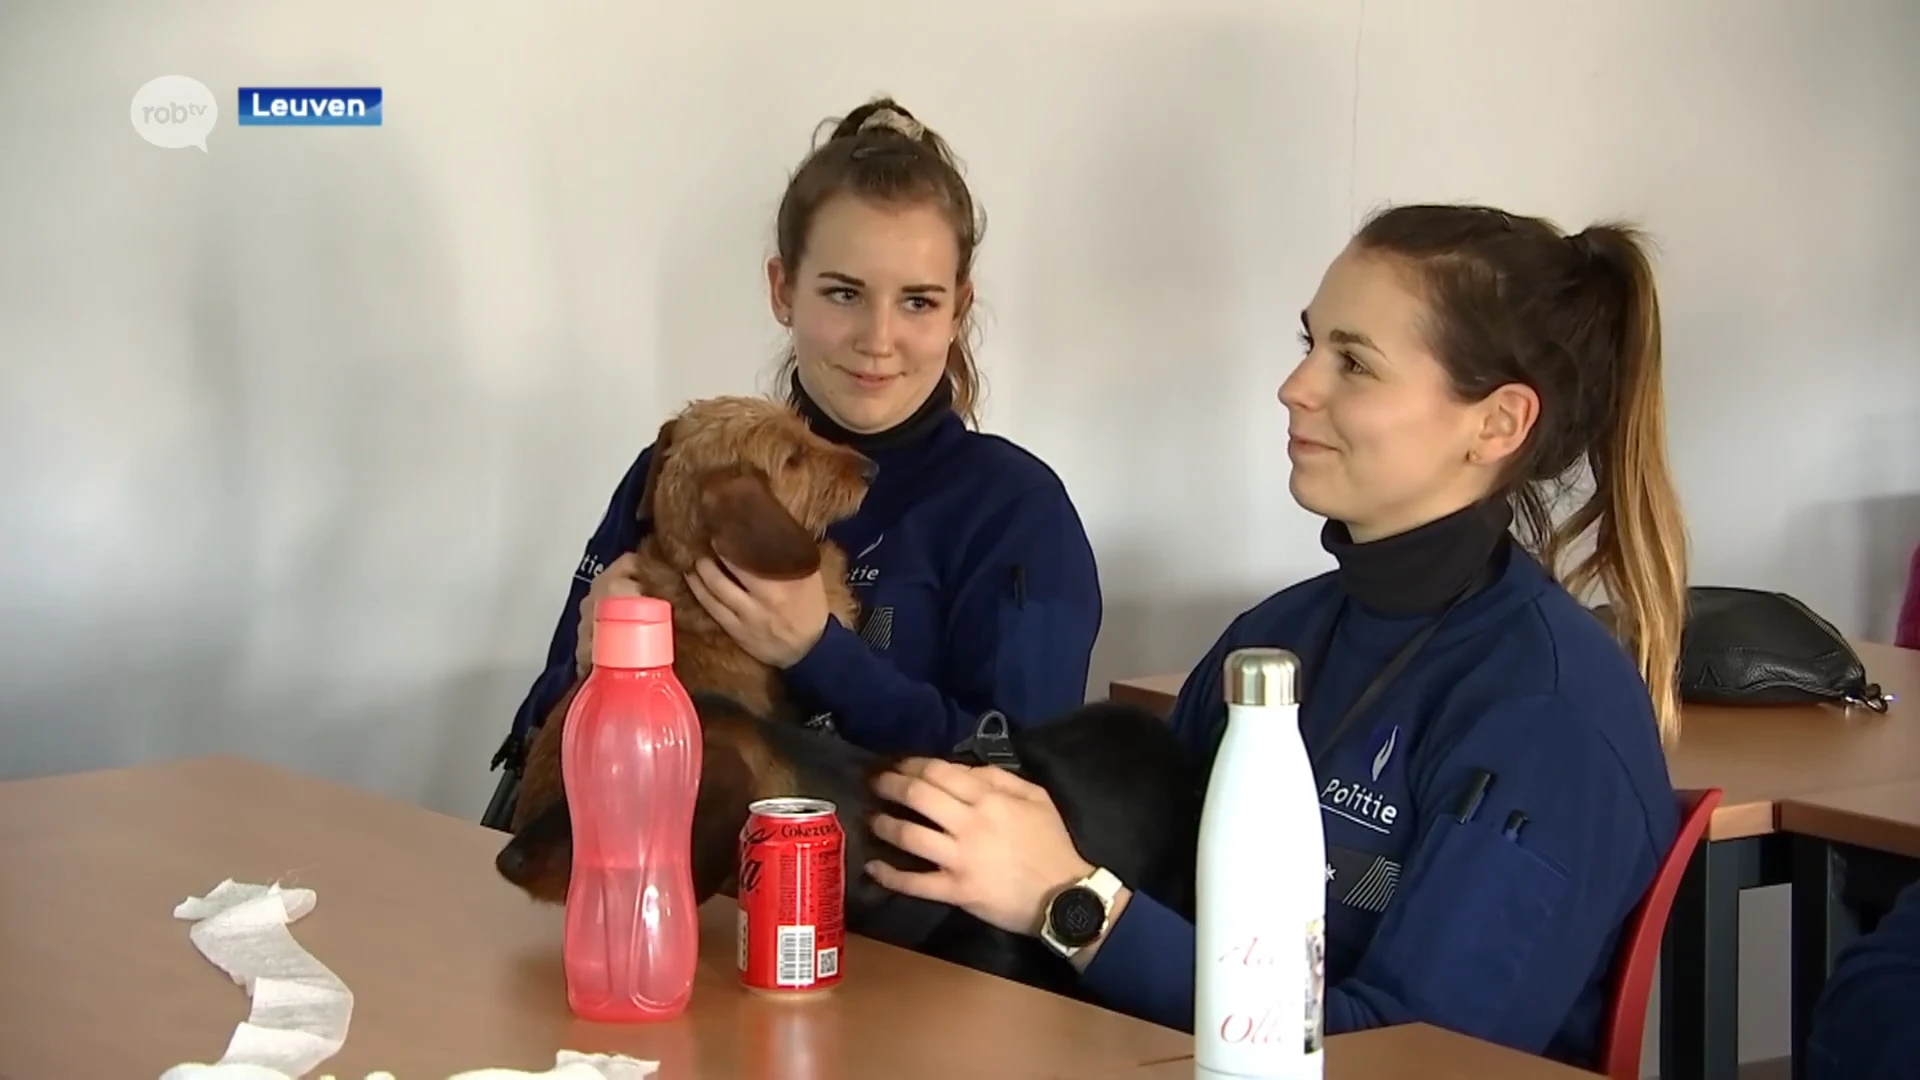 Politie Leuven werft "diereninspecteur" aan en organiseert opleiding dieren-EHBO voor korps: "Rust uitstralen is belangrijk"